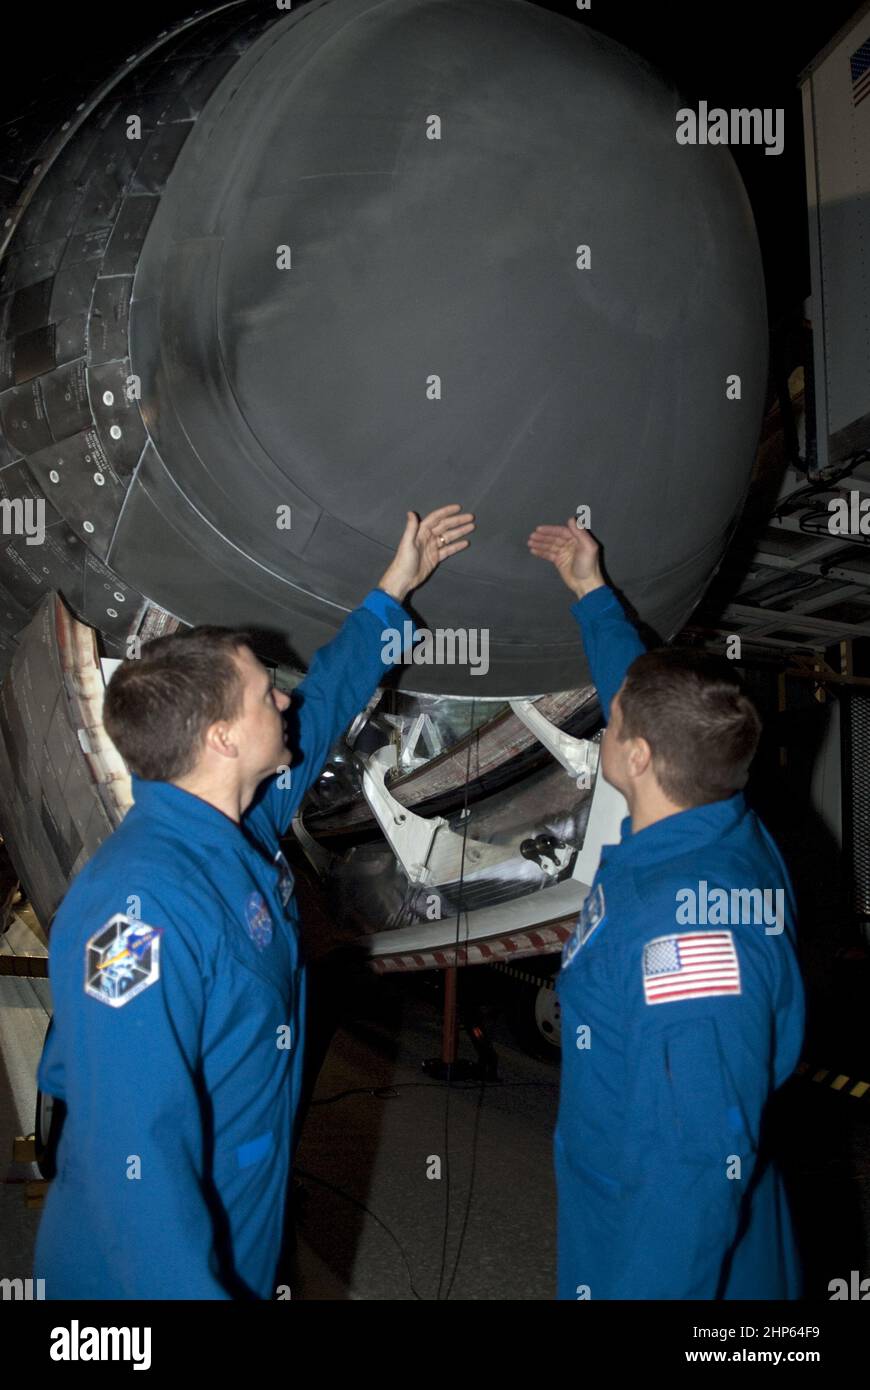 STS-130 Mission Specialists Nicholas Patrick, a sinistra, e Robert Behnken controllare la temperatura del nosecone dello Space Shuttle Endeavour dopo il suo successo di atterraggio sulla Runway 15 presso lo Shuttle Landing Facility presso il Kennedy Space Center della NASA in Florida ca. 2010 Foto Stock